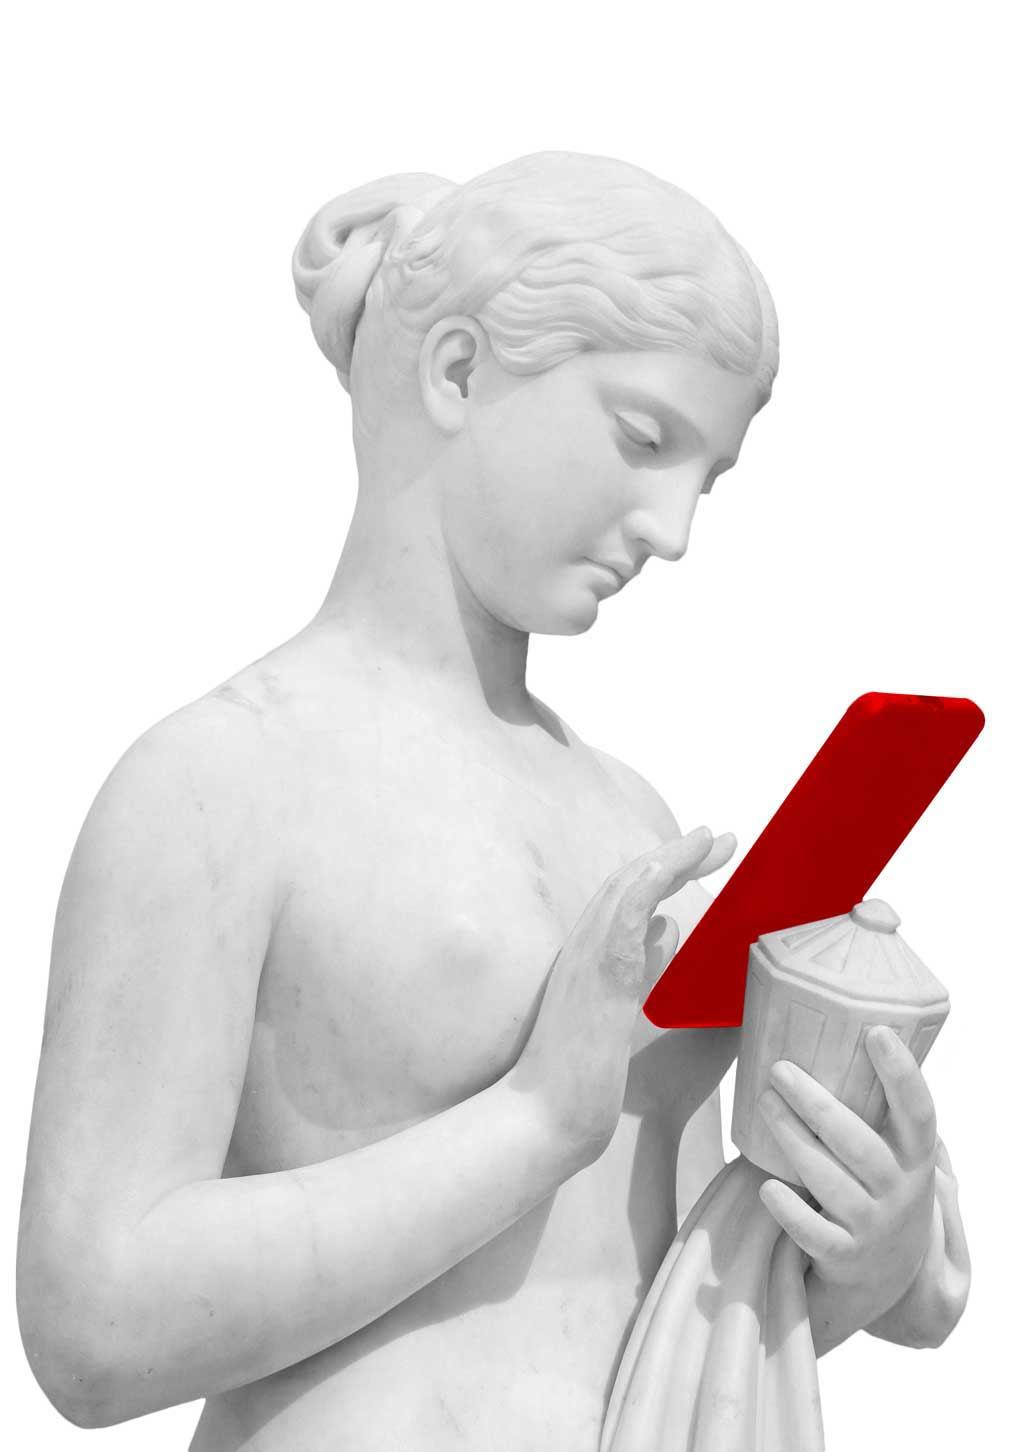 скульптура с красным телефоном